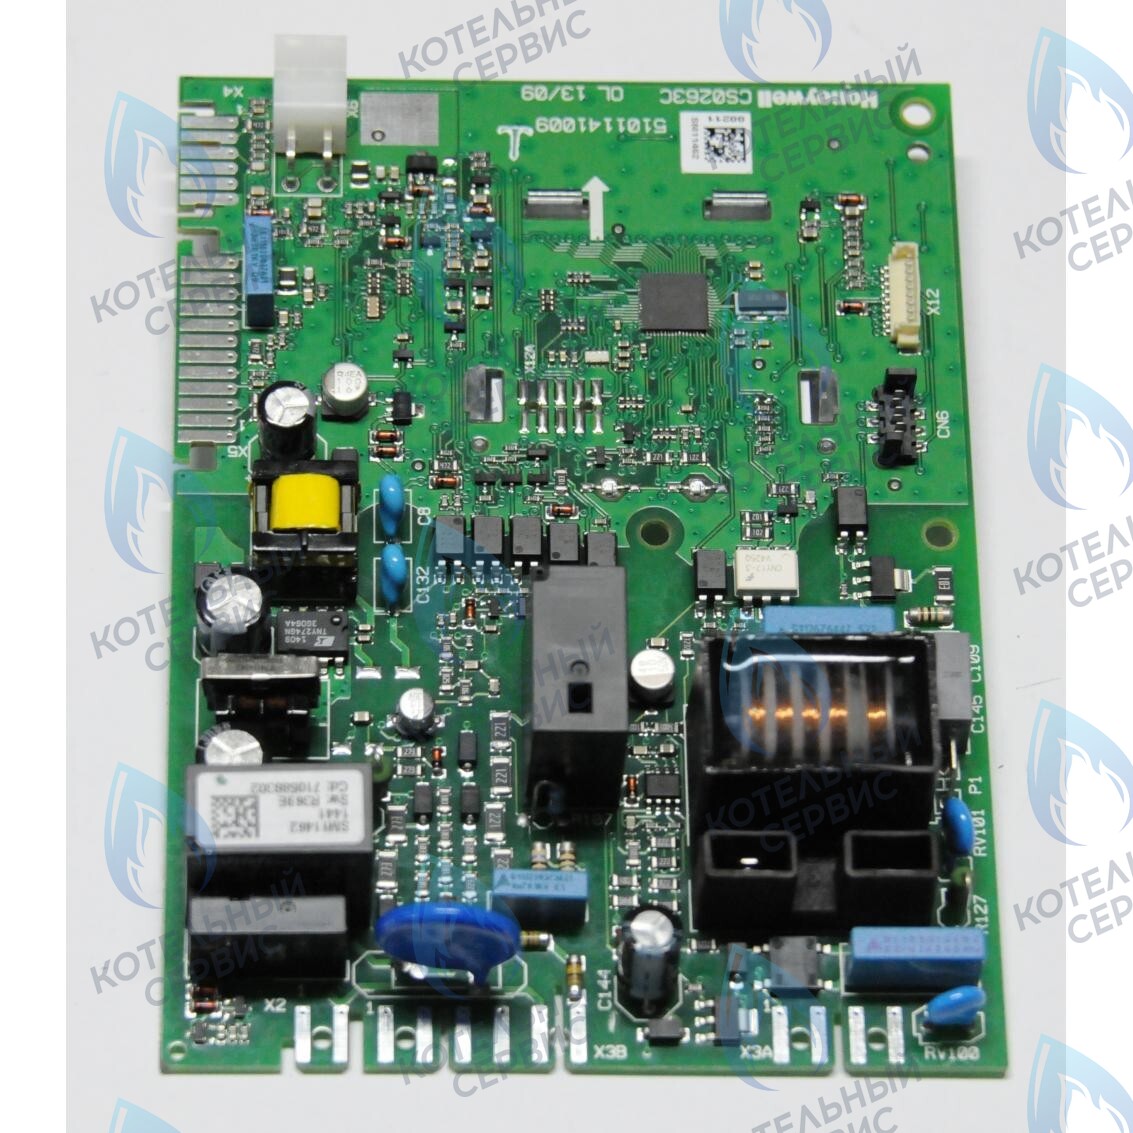 710591300 Электронная плата Honeywell PCB SM11462 BAXI MAIN Four (старого образца, серая панель) 